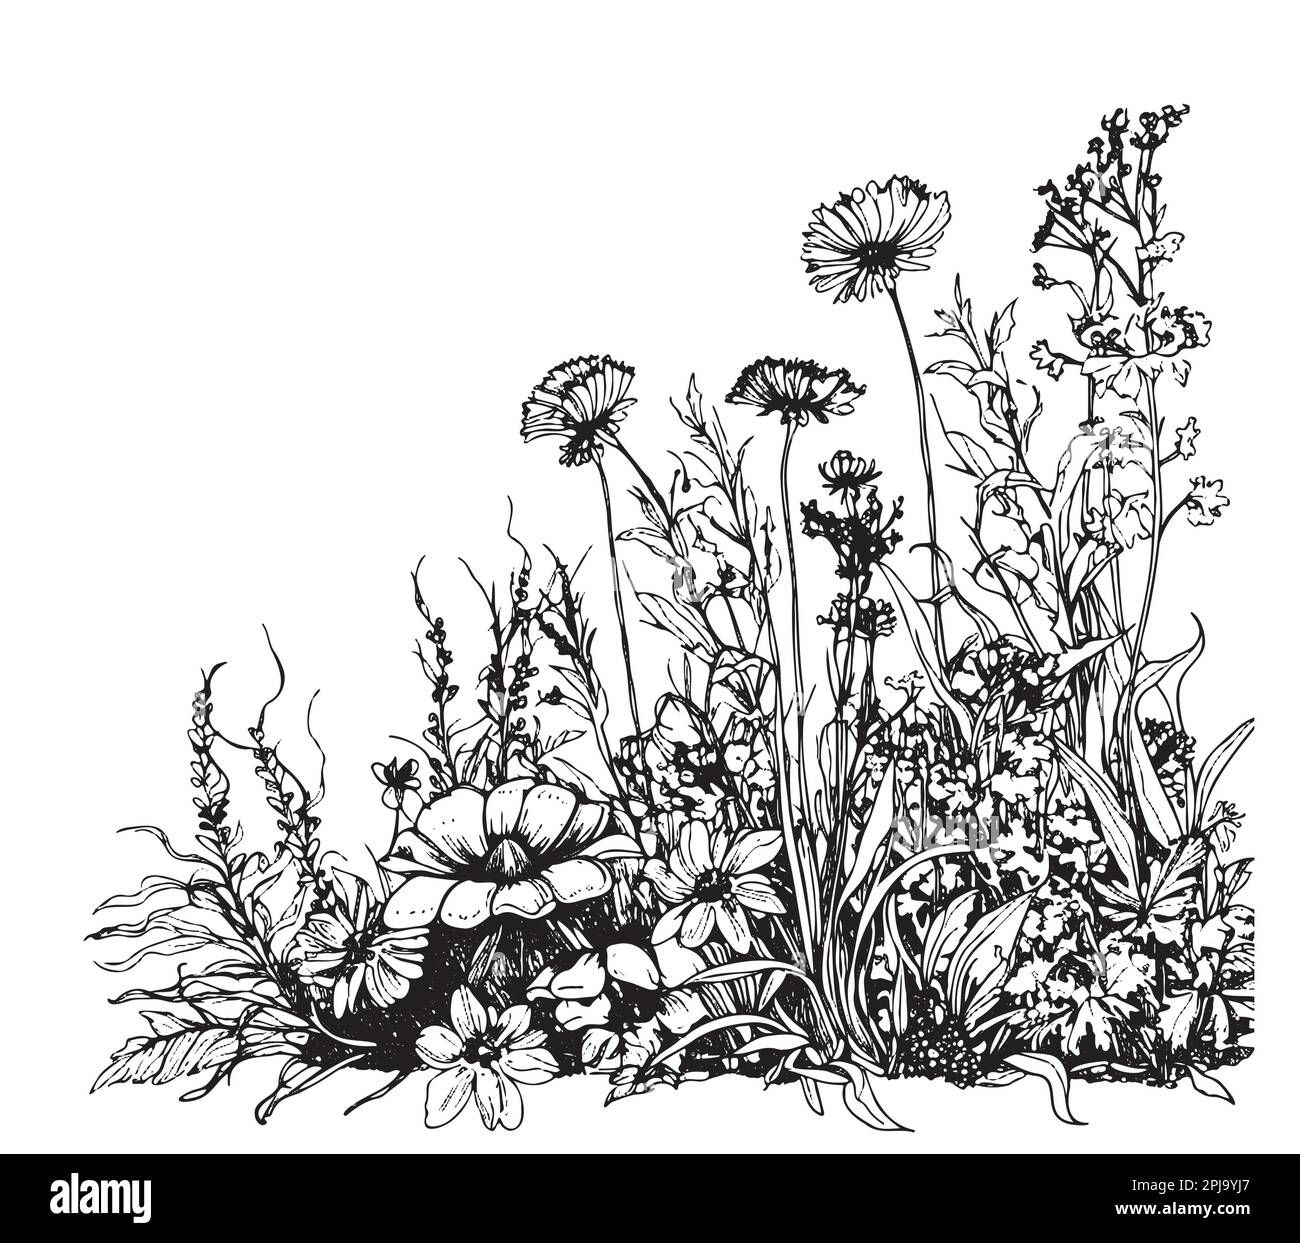 Parte de campo de flores silvestres dibujado a mano boceto en la ilustración de estilo doodle Ilustración del Vector